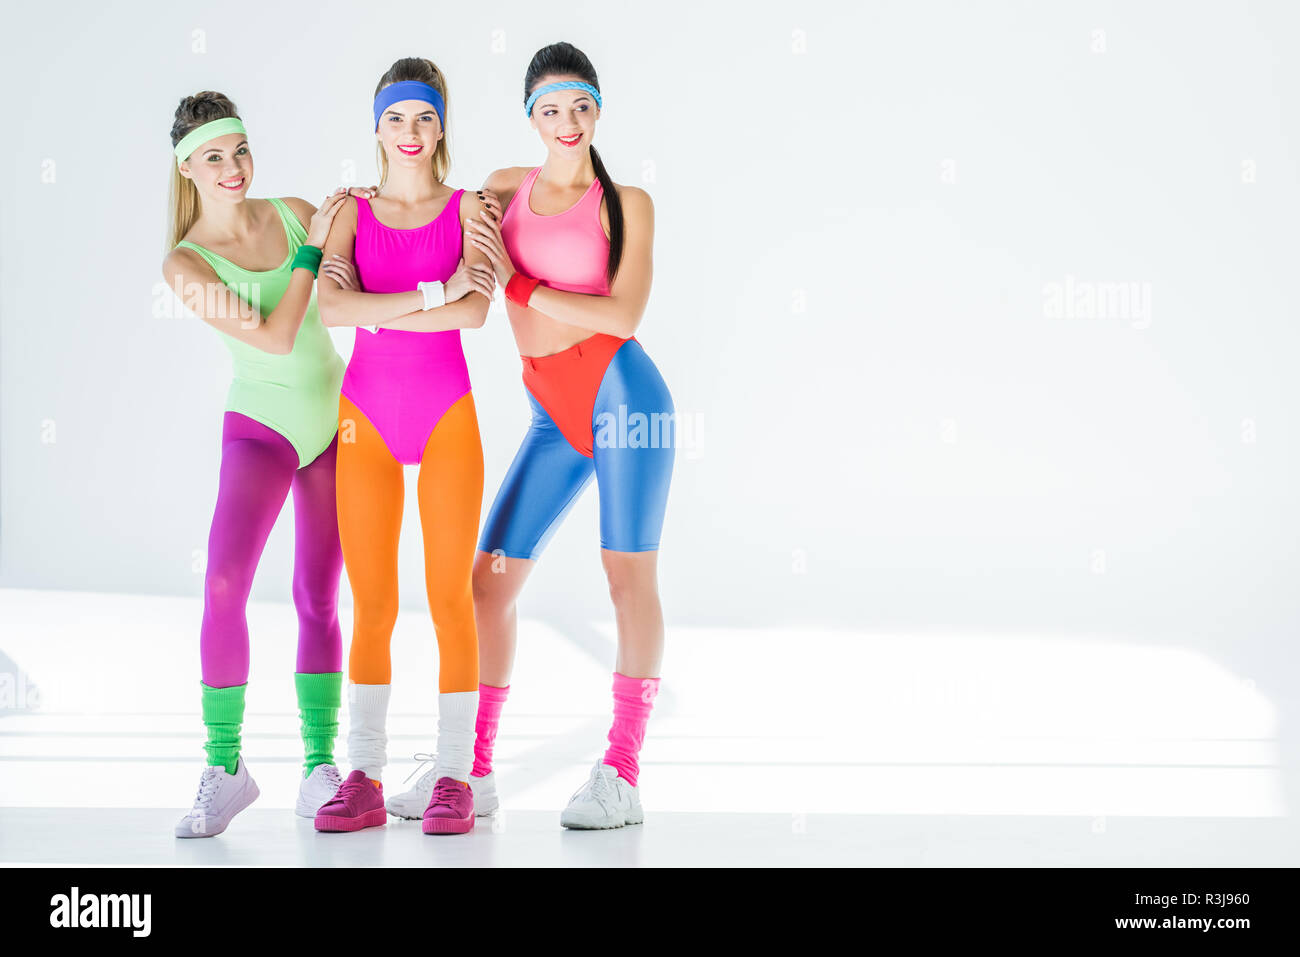 Schone Sportliche Junge Frauen Im 80er Jahre Stil Sportswear An Kamera Lachelnd Auf Grau Stockfotografie Alamy